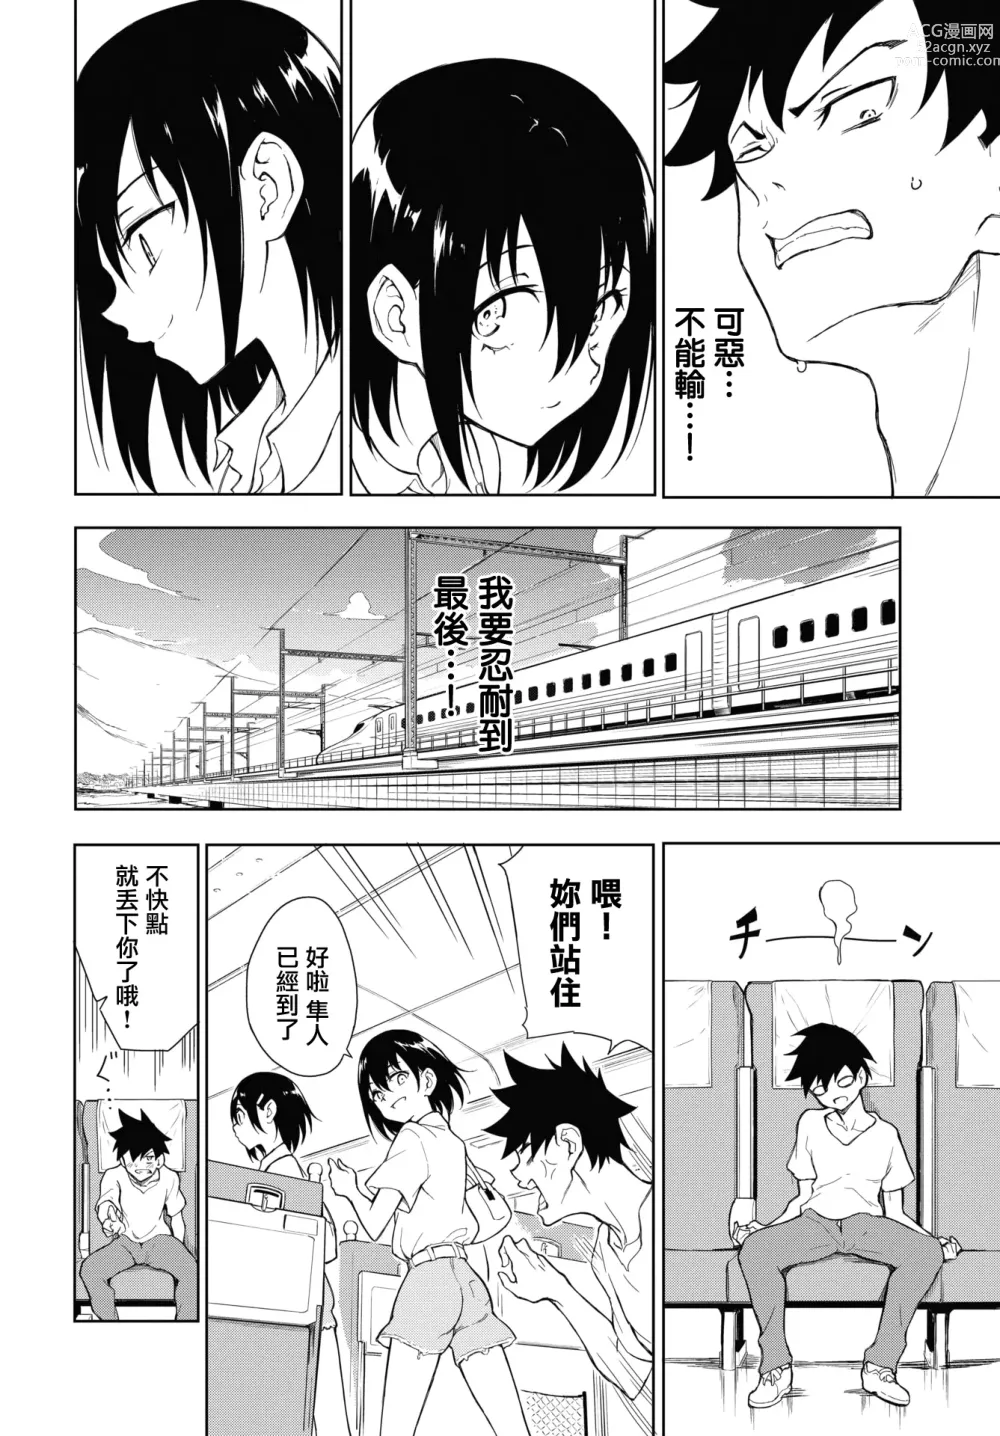 Page 8 of manga Kaede to Suzu 7